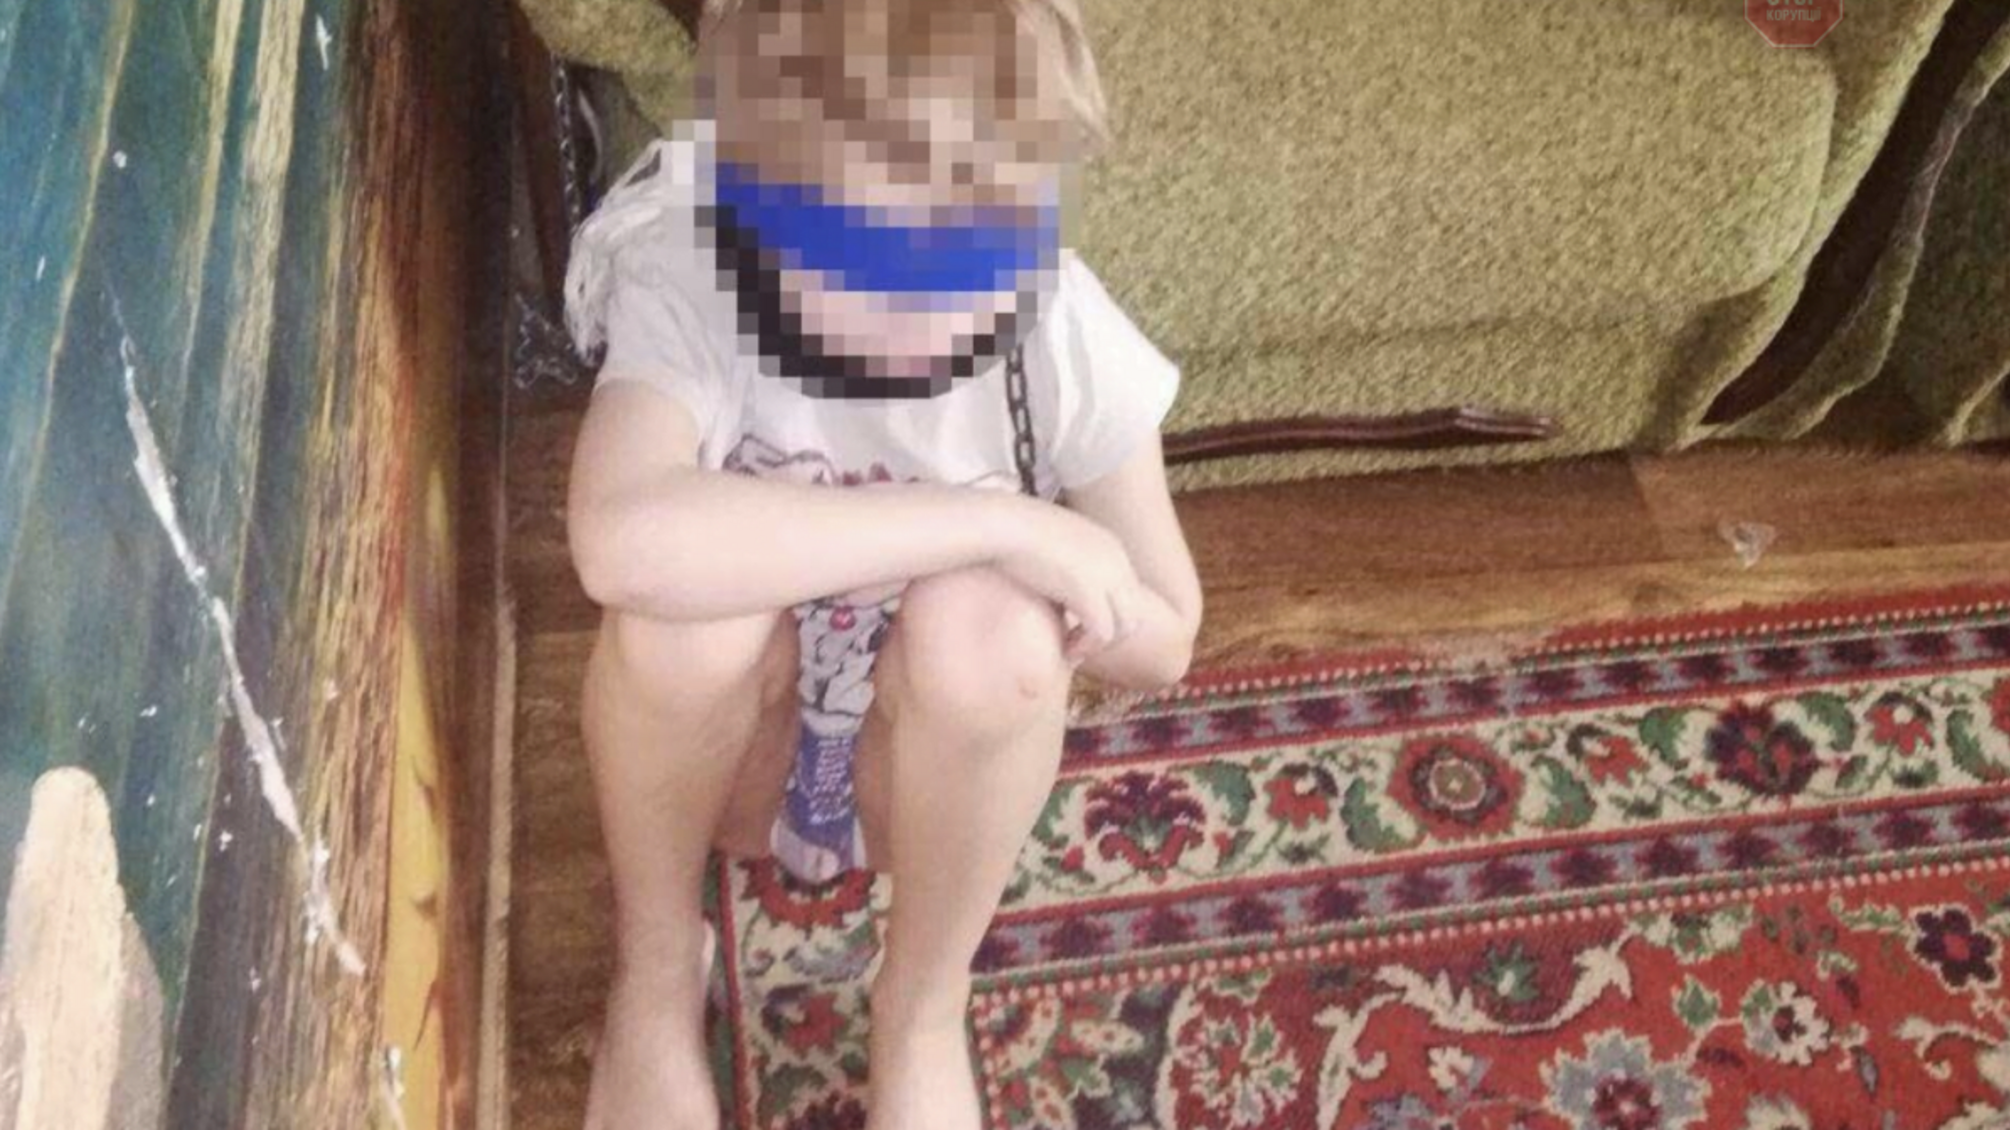 Ланцюг на шию та скотч на очі – у Дніпрі жінка знущалась над 8-річним хлопчиком (фото)